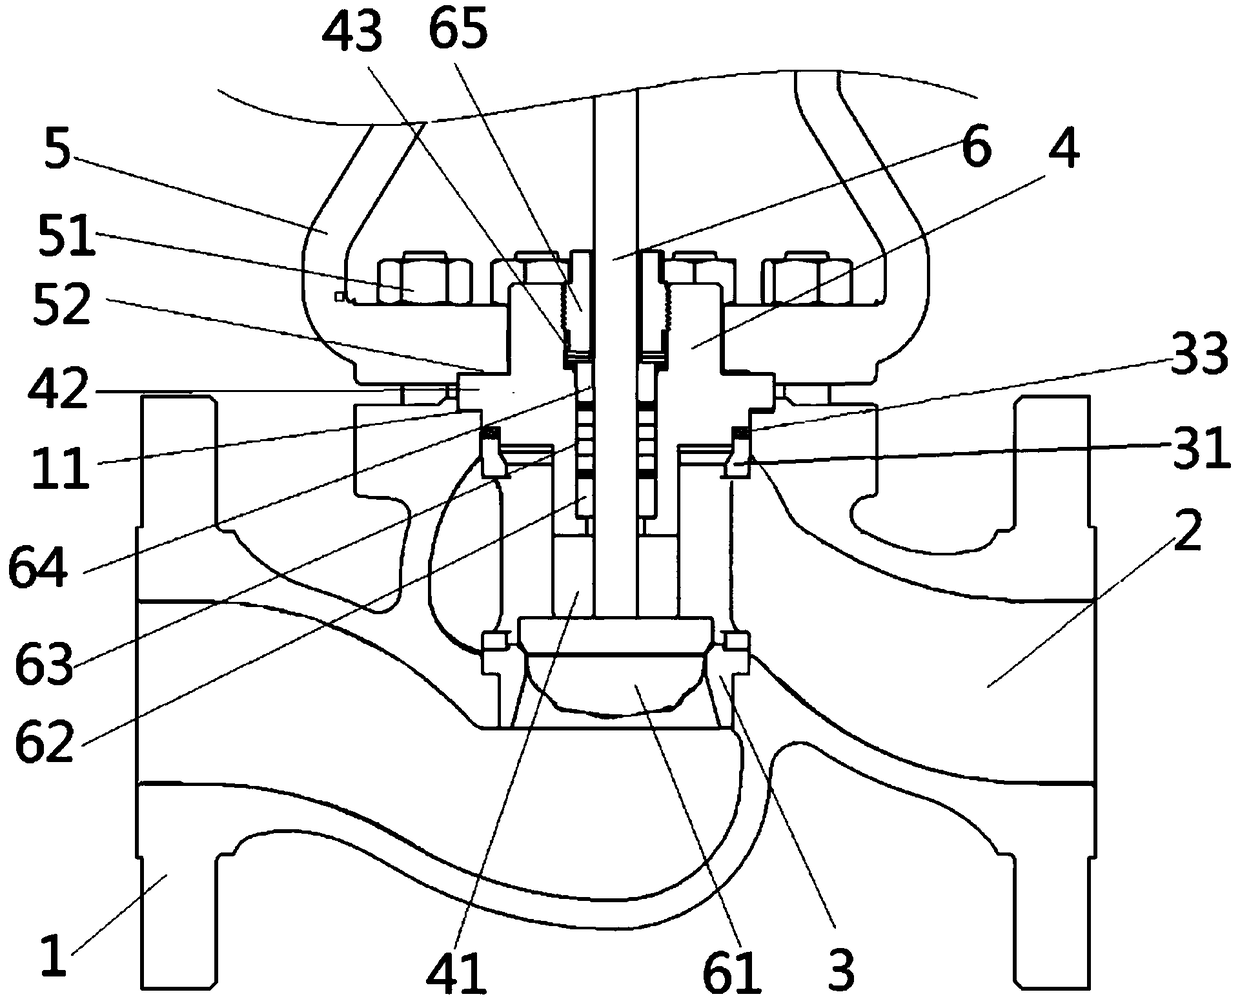 Integrated regulating valve